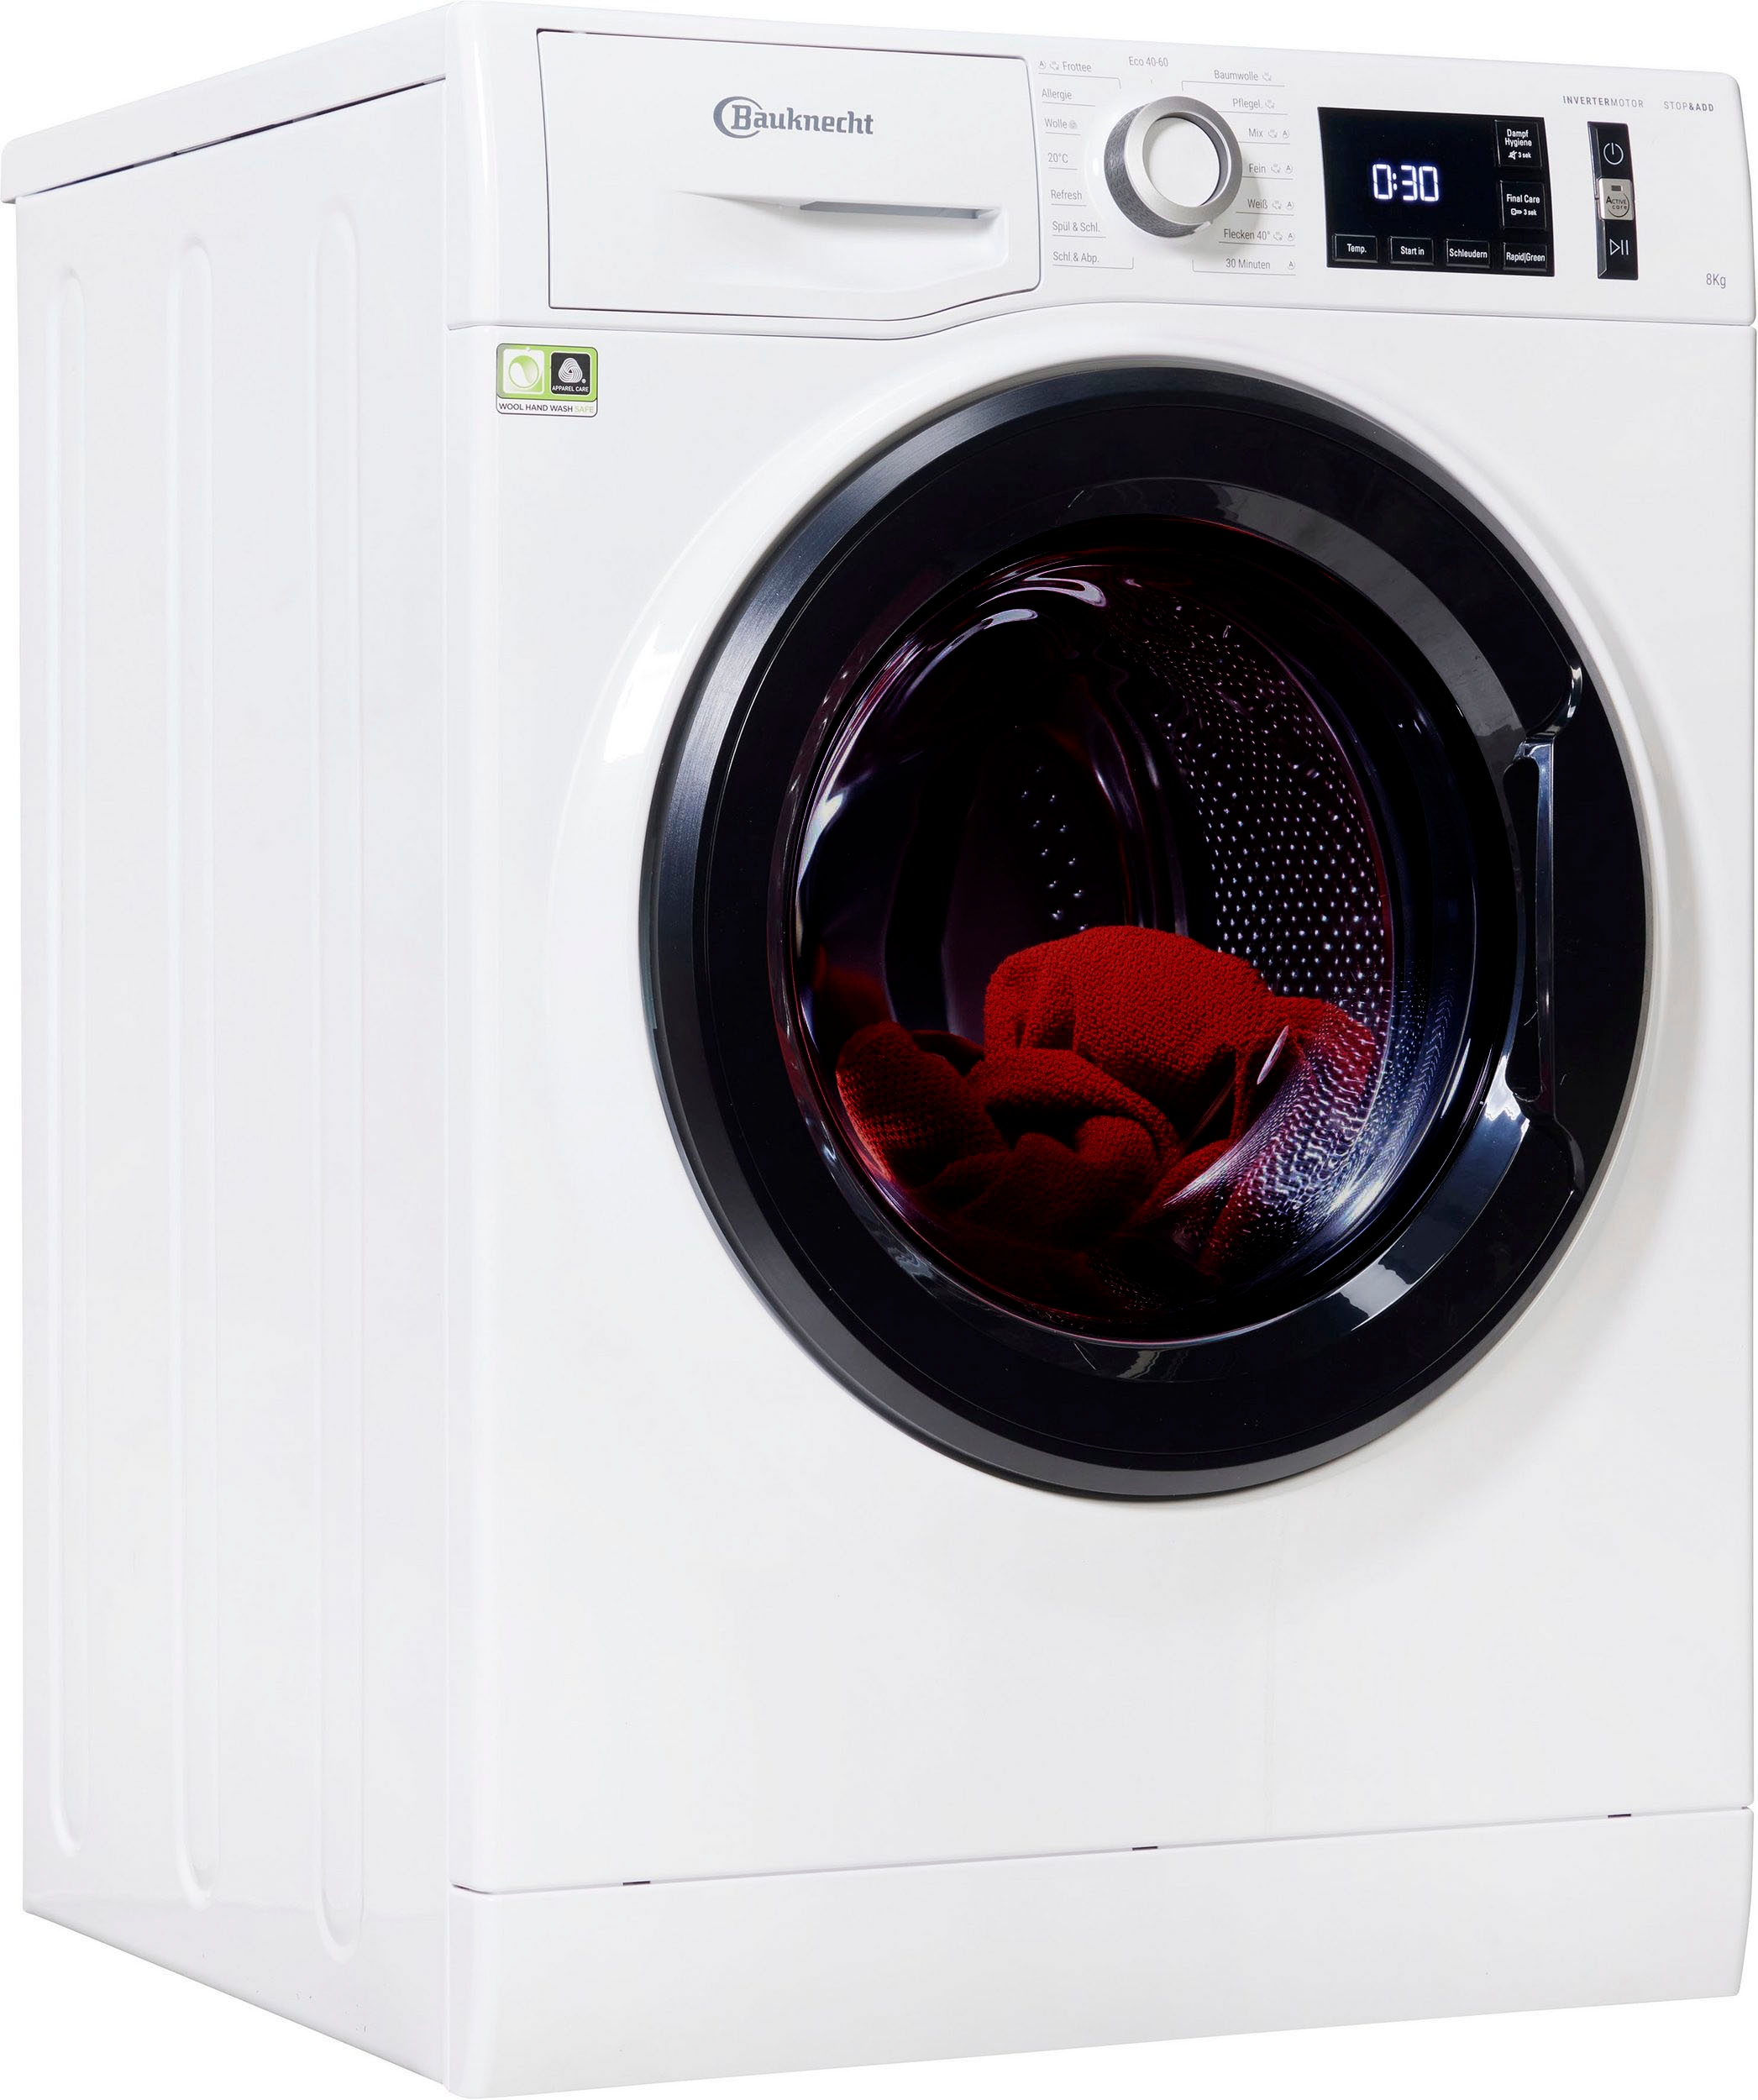 BAUKNECHT Waschmaschinen Frontlader | BAUR kaufen